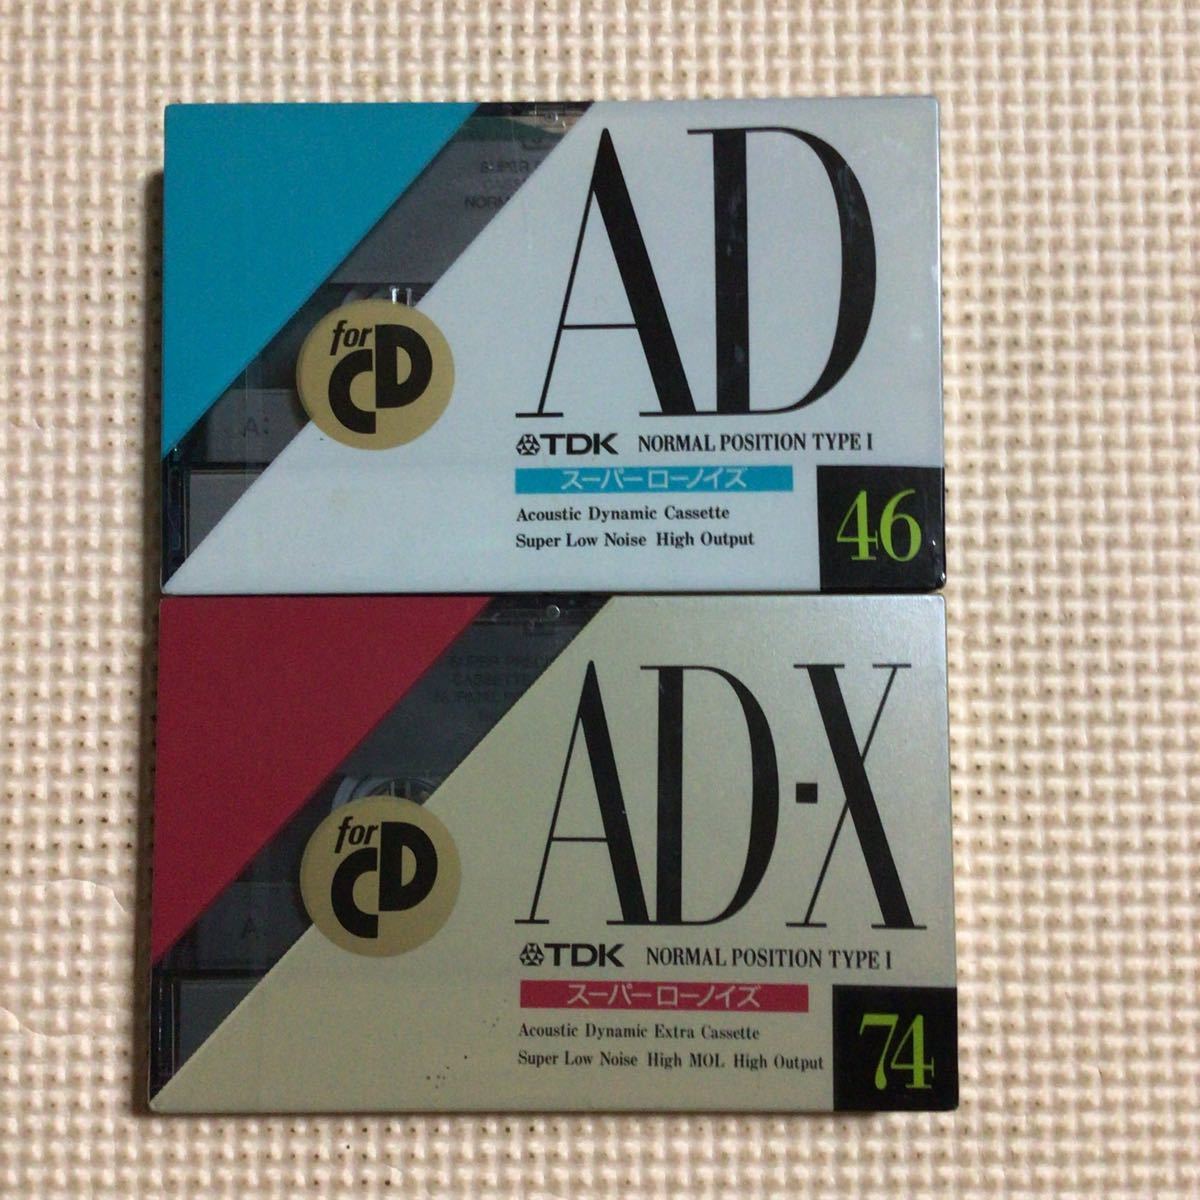 TDK AD 46.AD-X 74 ノーマルポジション カセットテープ2本セット【未